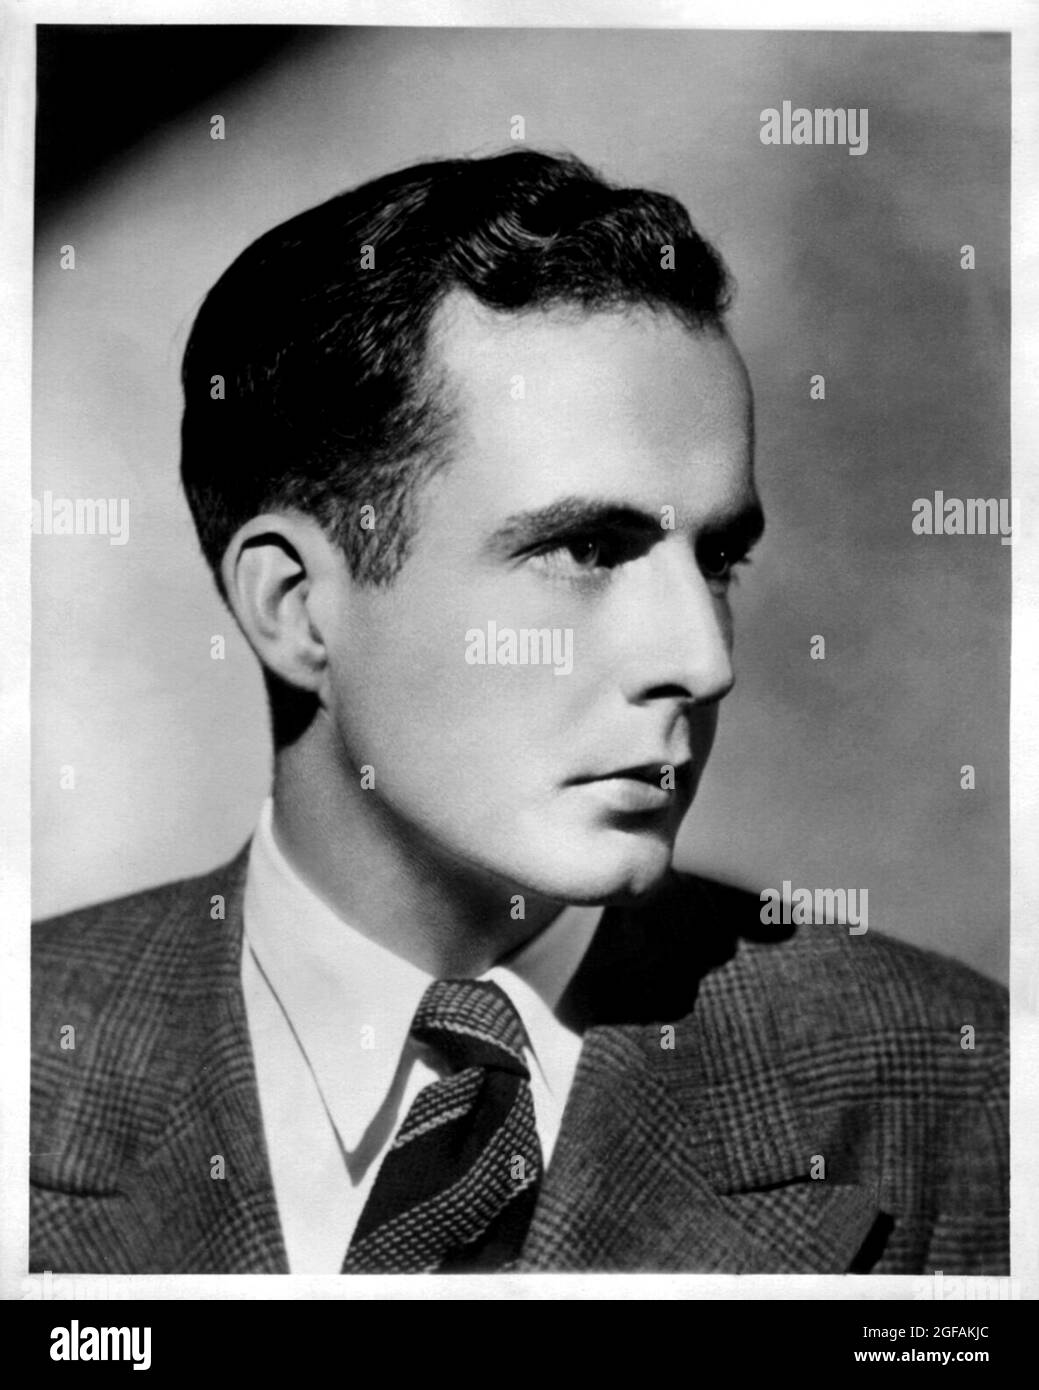 1937 Ca, USA : El célebre compositor musical americano Samuel BARBER ( 1910 – 1981 ). Fotógrafo desconocido .- COMPOSITORE - DIRETTORE D' ORQUESTA - perfil - profilo - MUSICA CLÁSICA - MÚSICA - cravatta - corbata - collar - colletto --- Archivio GBB Foto de stock